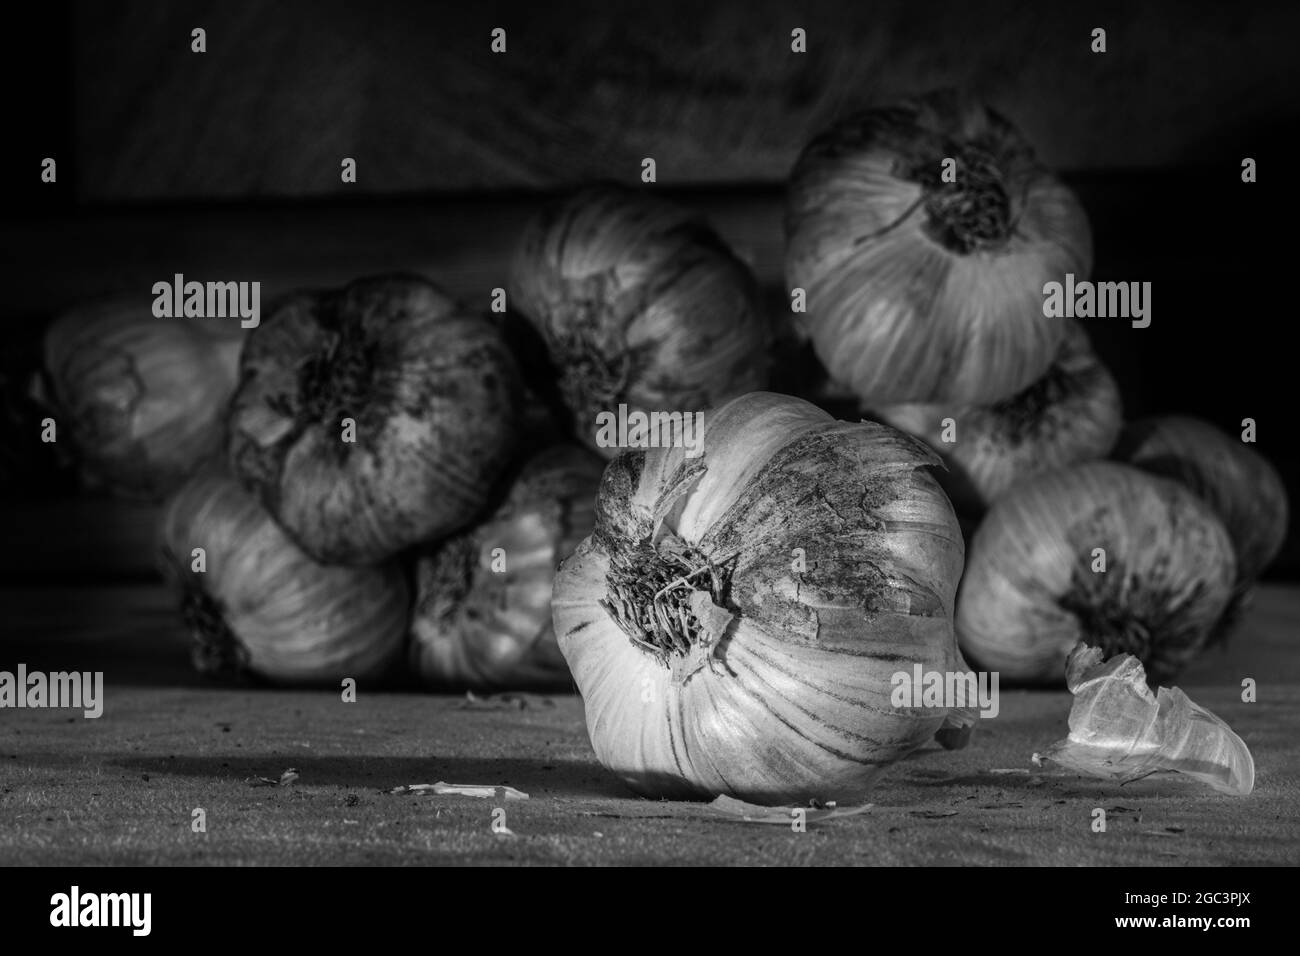 Diversi pezzi di aglio fresco, primo piano, bianco e nero. Può essere usato per illustrare le proprietà benefiche dell'aglio, sfondo naturale Foto Stock